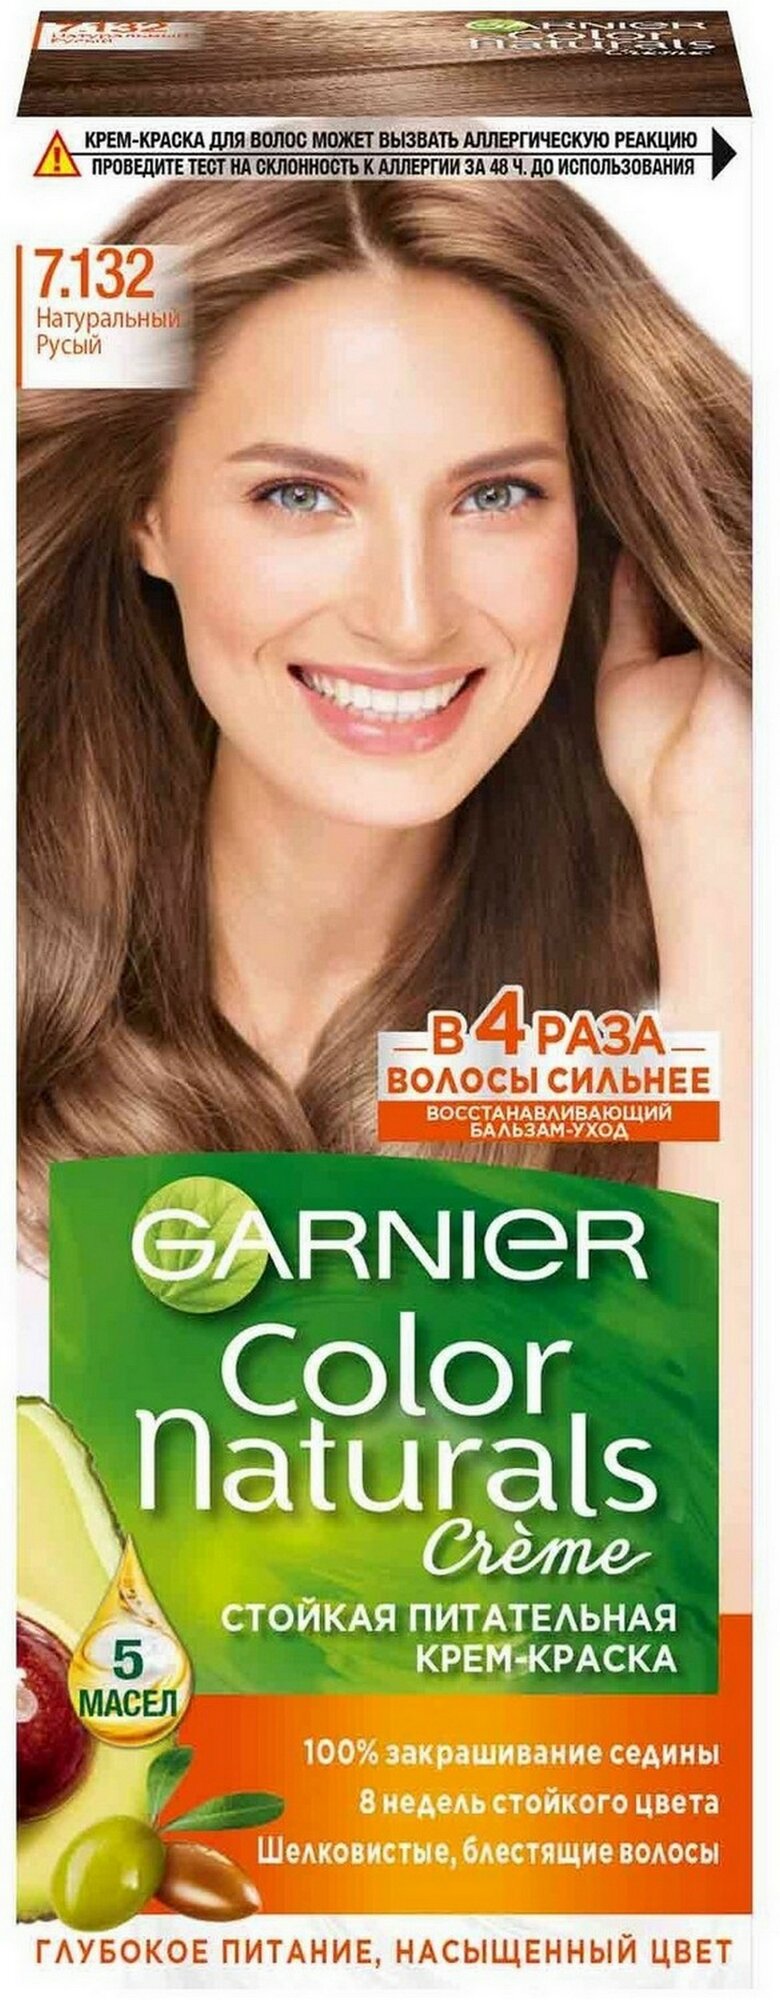 GARNIER Color Naturals стойкая питательная крем-краска для волос, 7.132, Натуральный русый, 110 мл - 1 шт